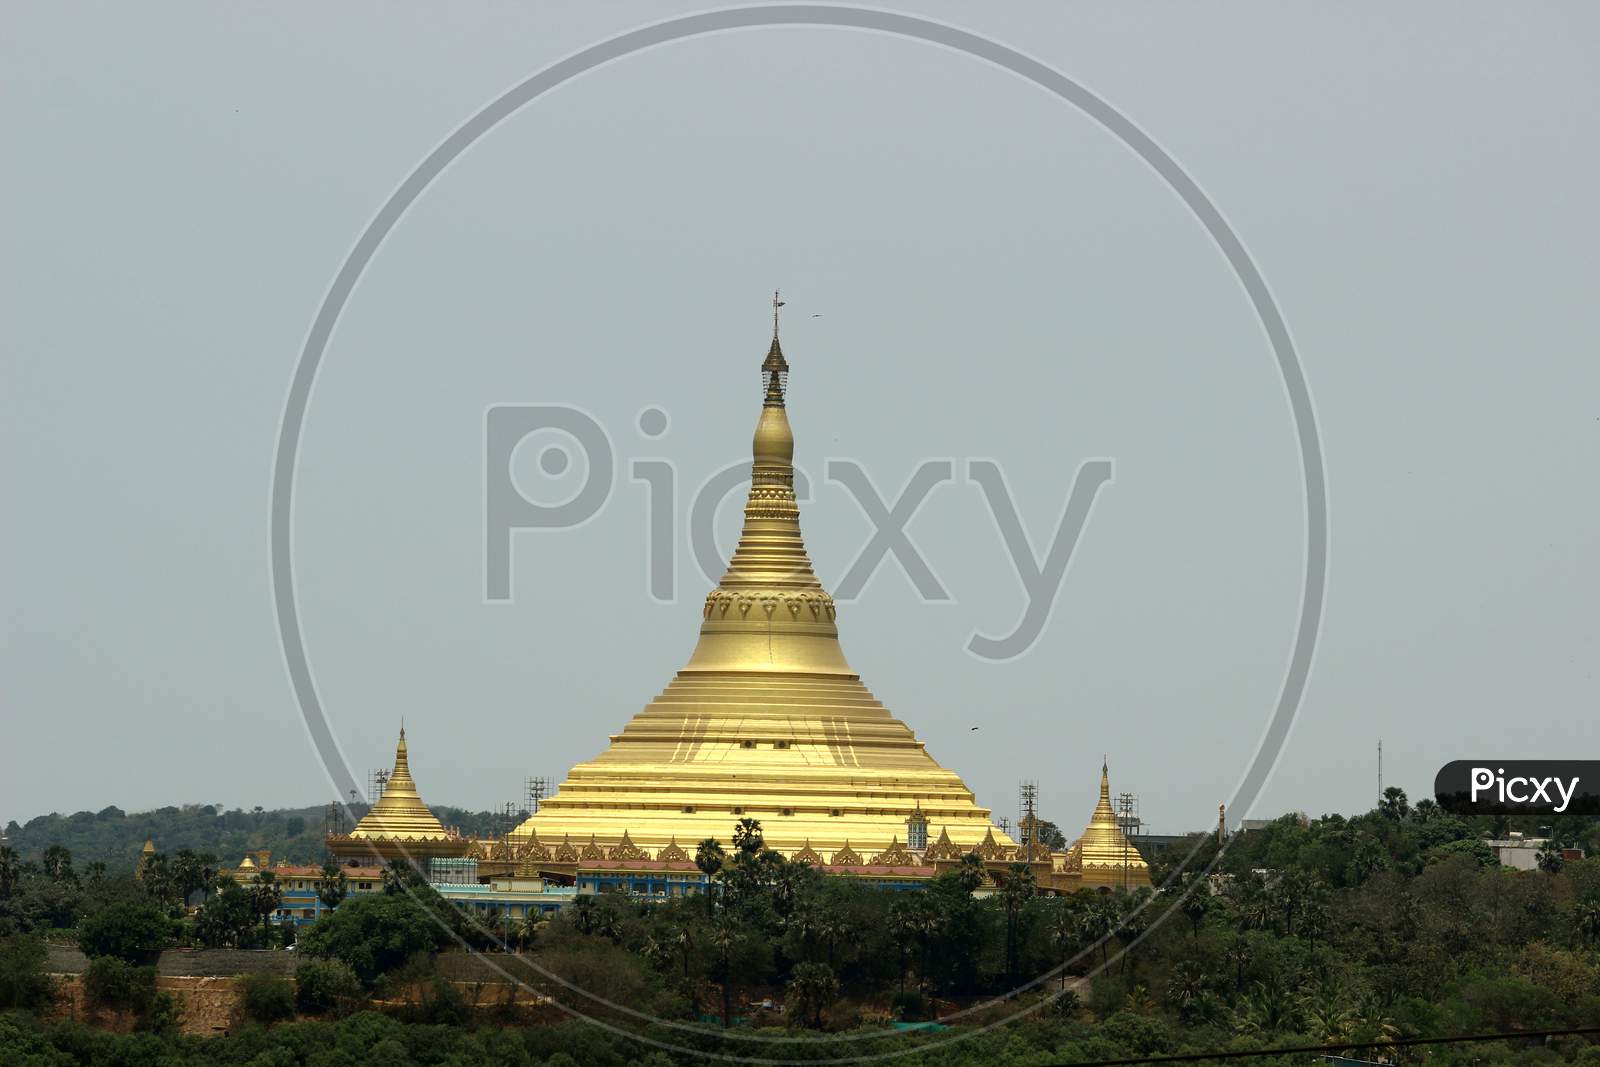 Global Vipasyana Pagoda